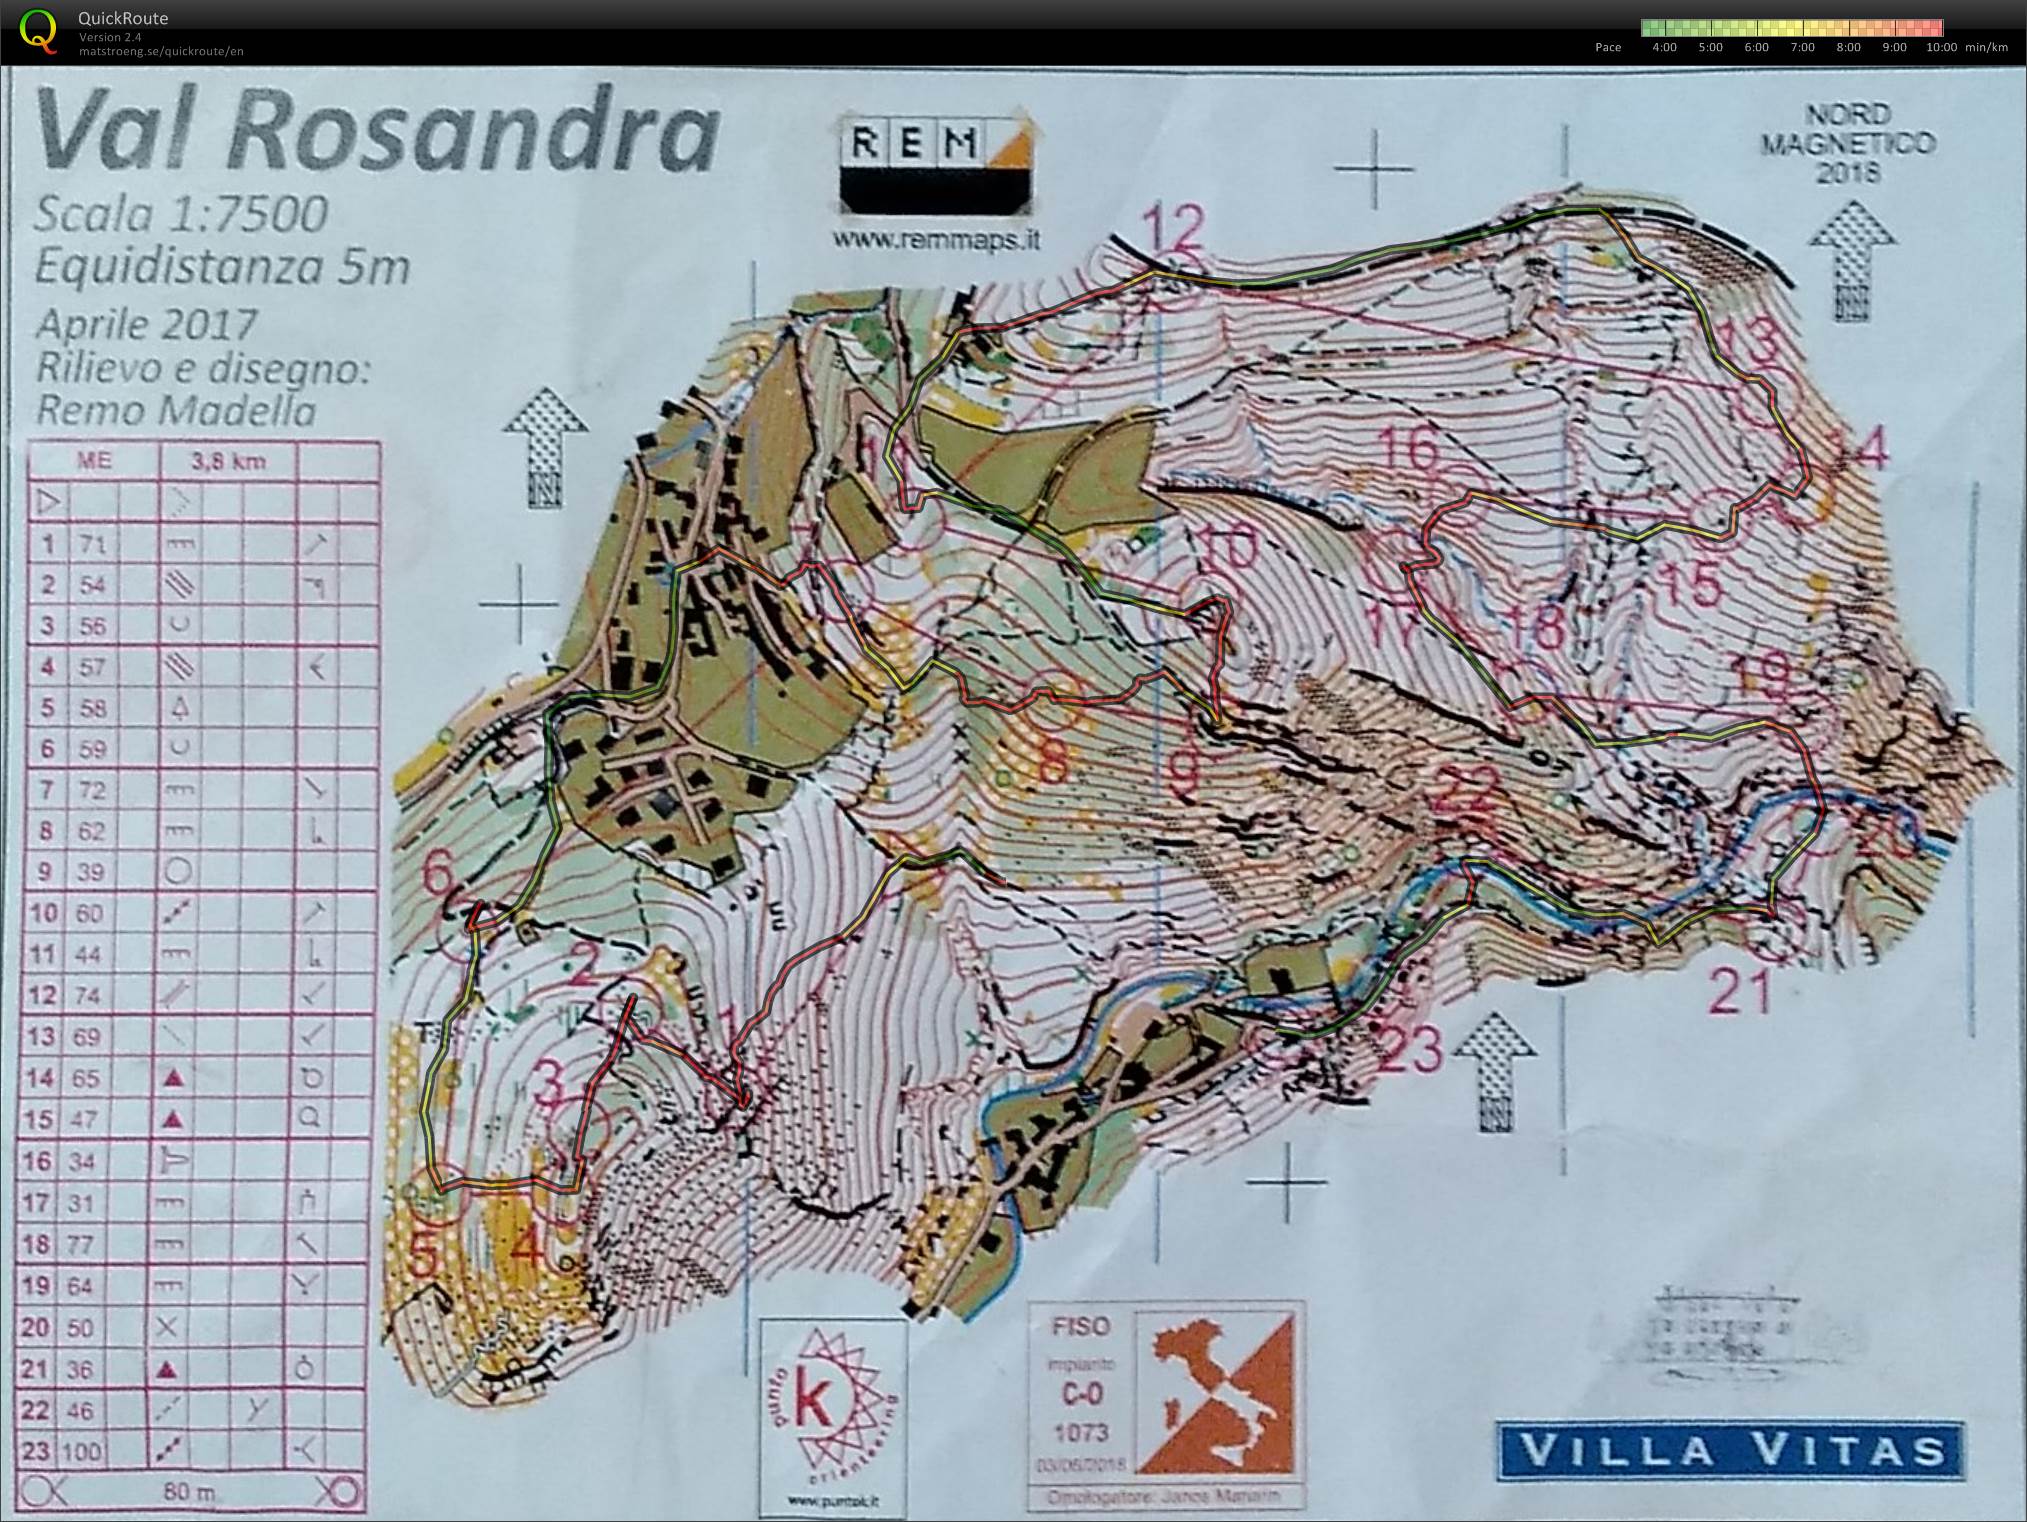 Orienteering in Val Rosandra Gara Regionale Middle (11/11/2018)